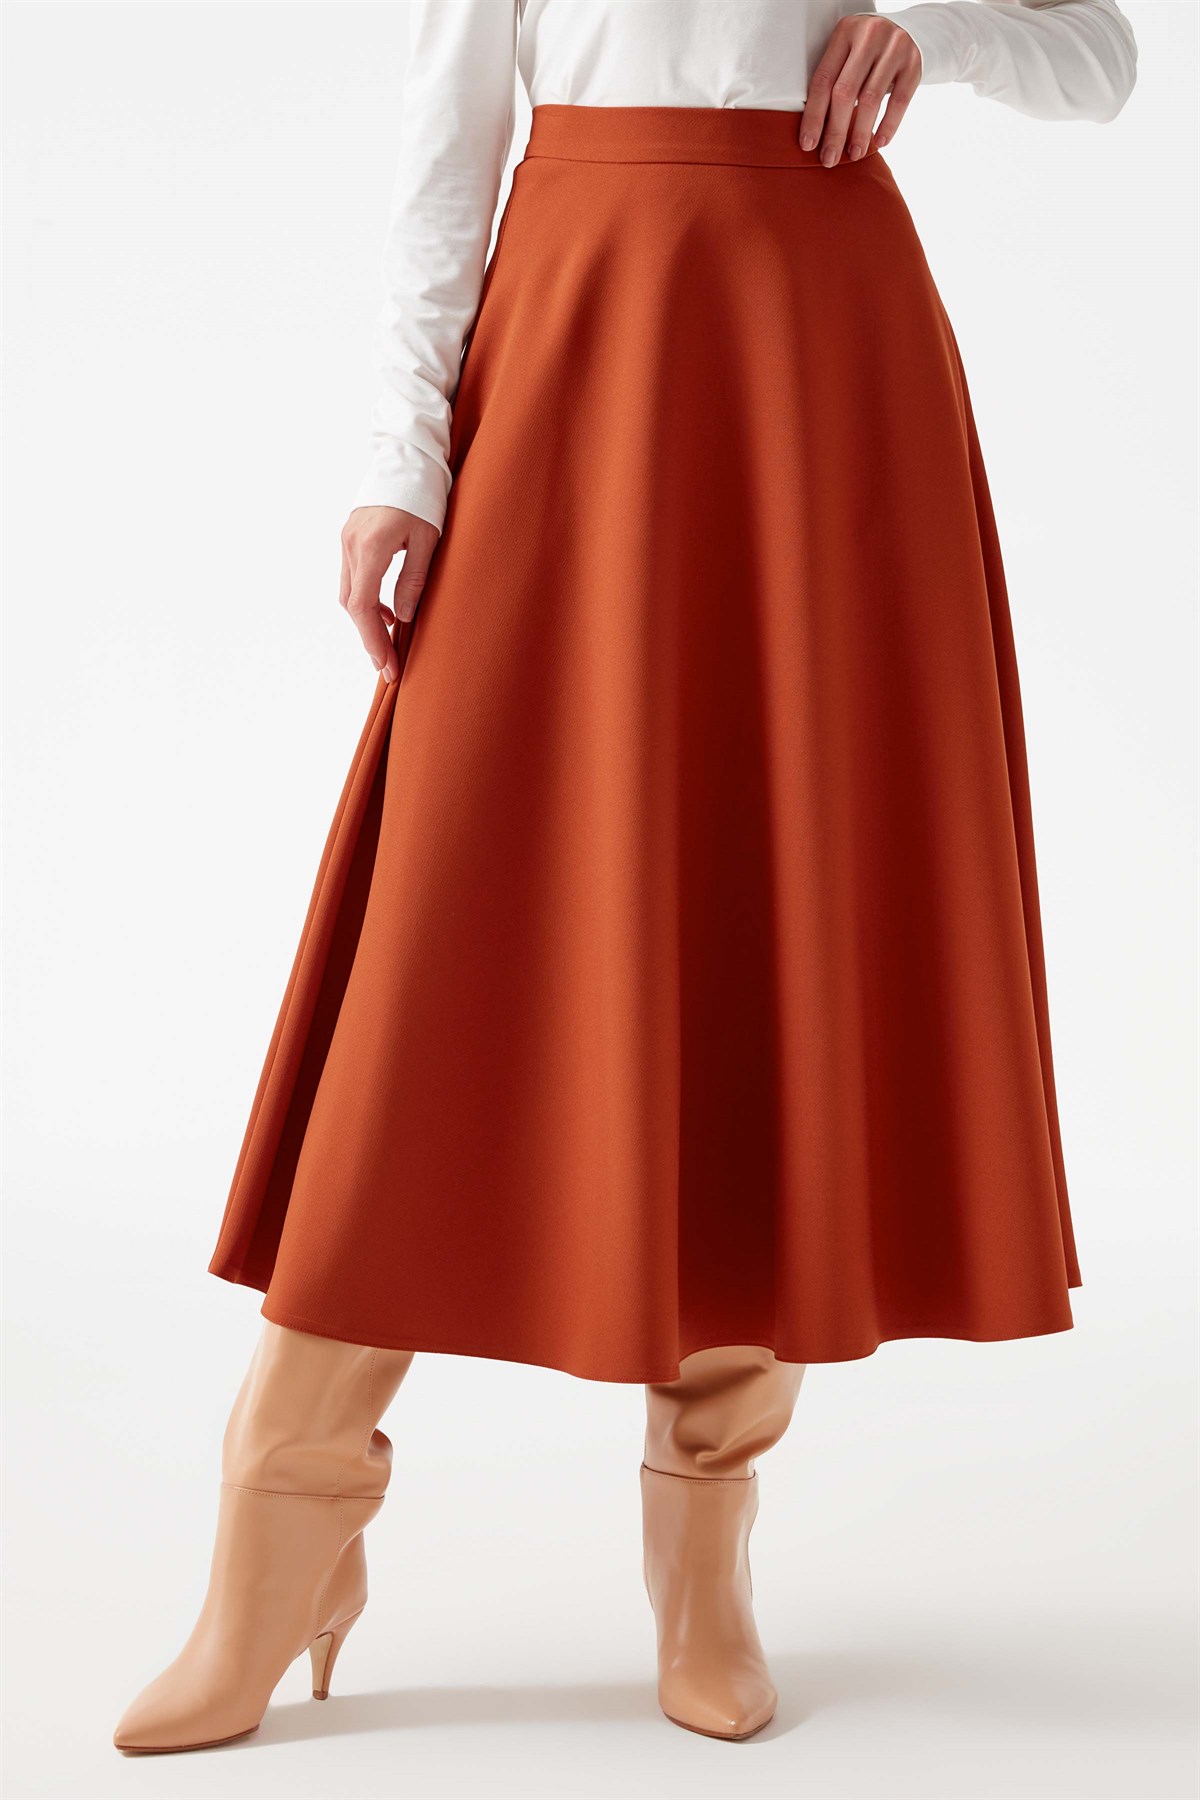 Godeli Basic Skirt - Camel